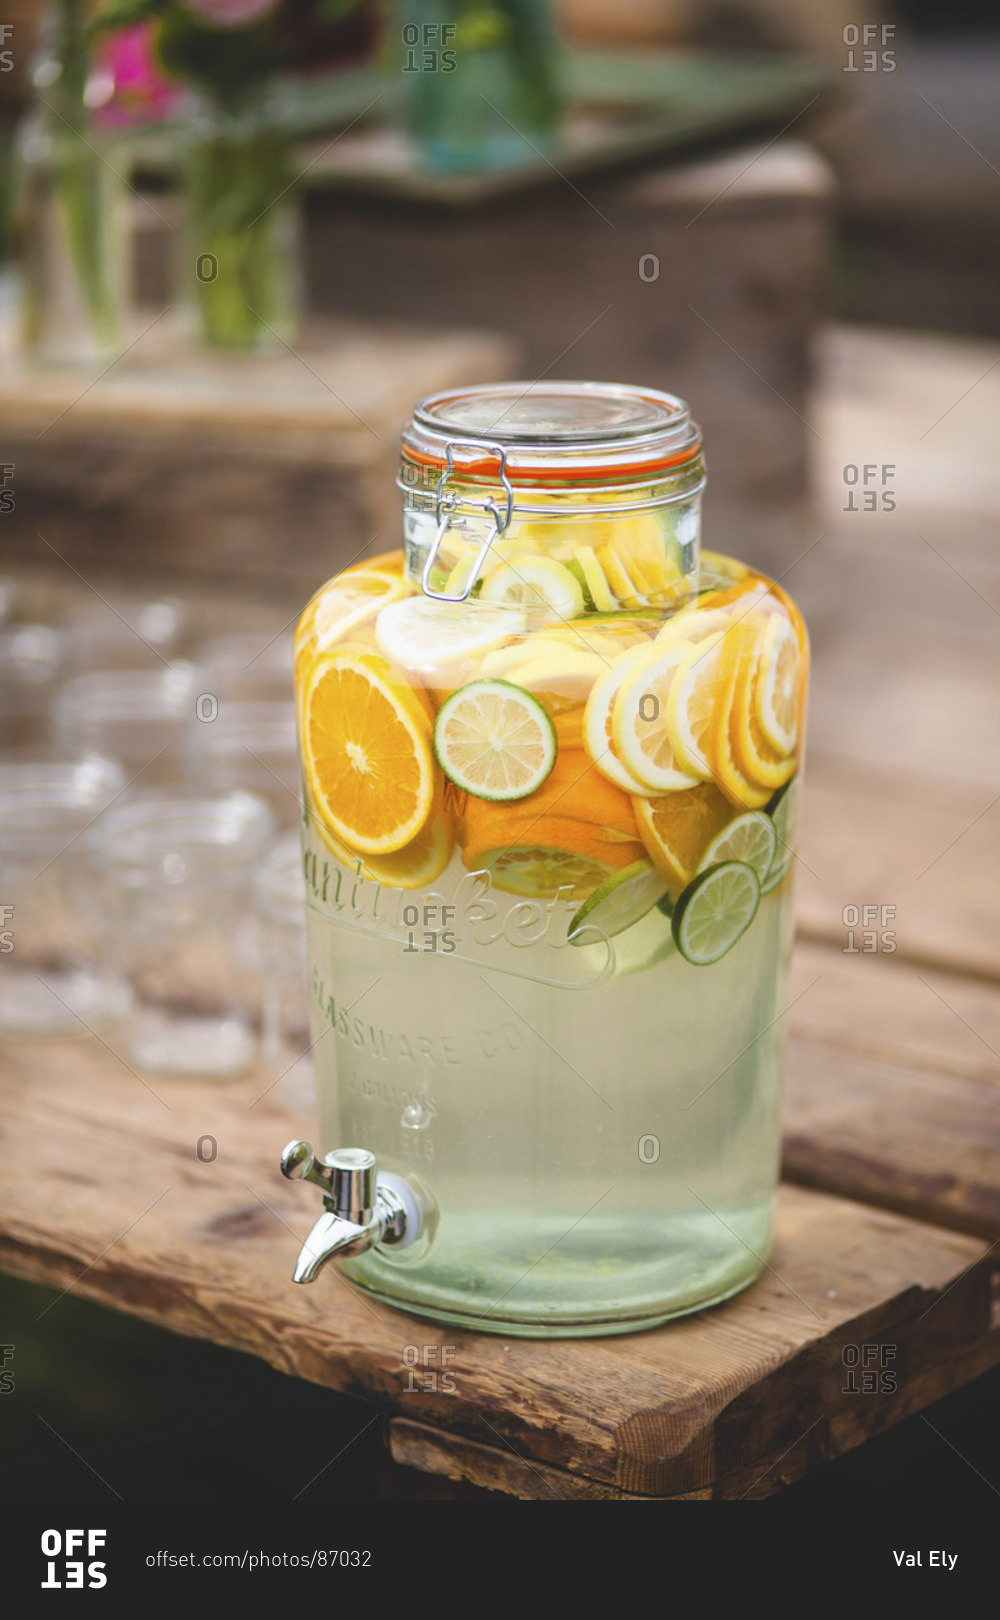 Lemonade served in jar beverage dispenser outdoors